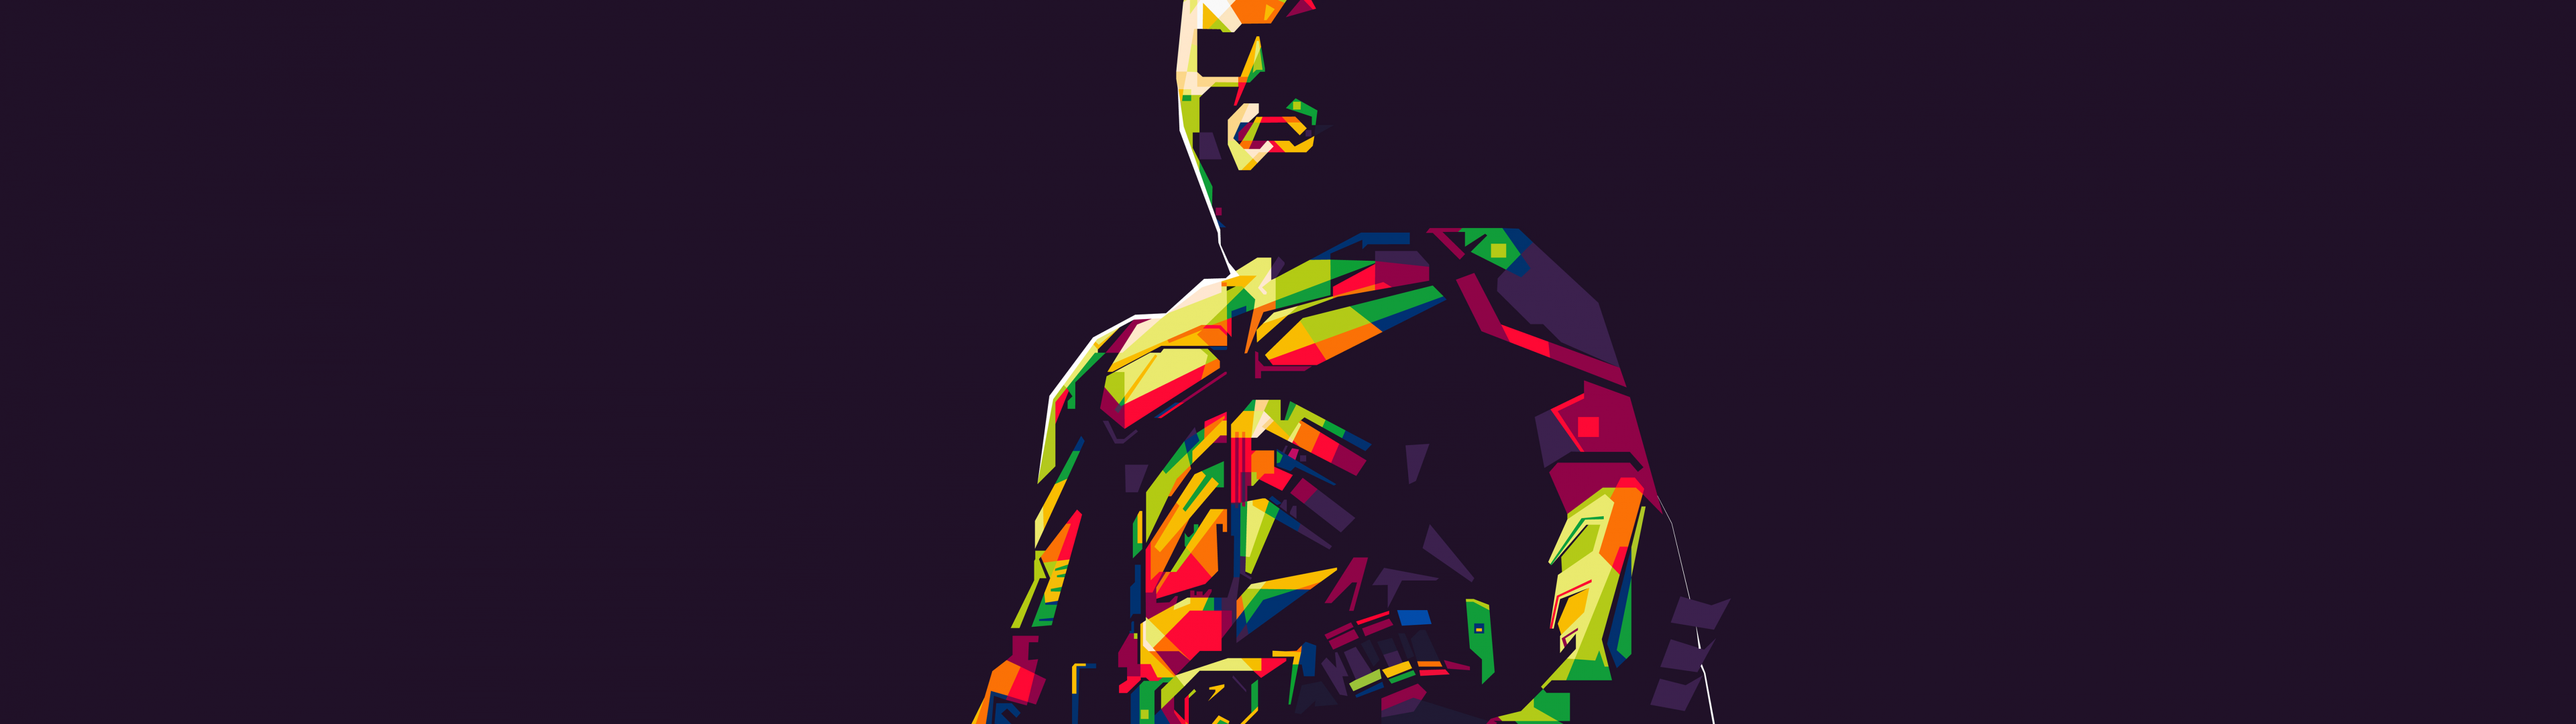 Minimalism Batman UHD 8K Wallpaper